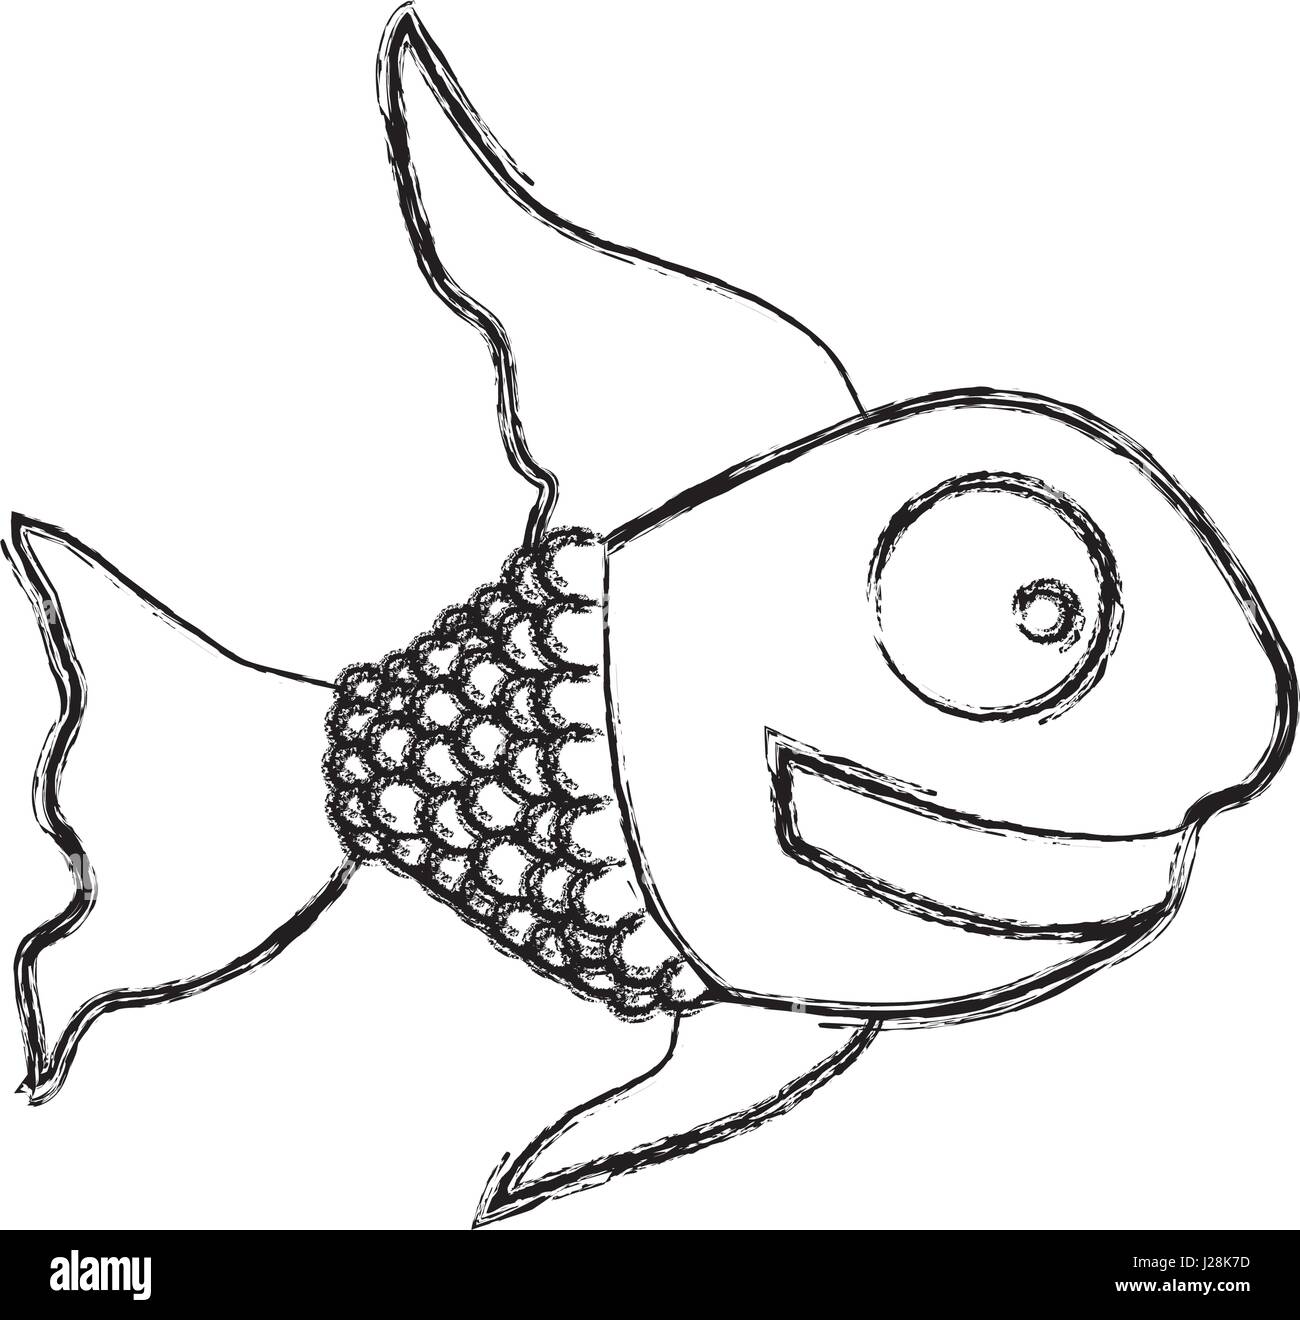 Dibujo monocromo de peces con aletas largas Imagen Vector de stock - Alamy